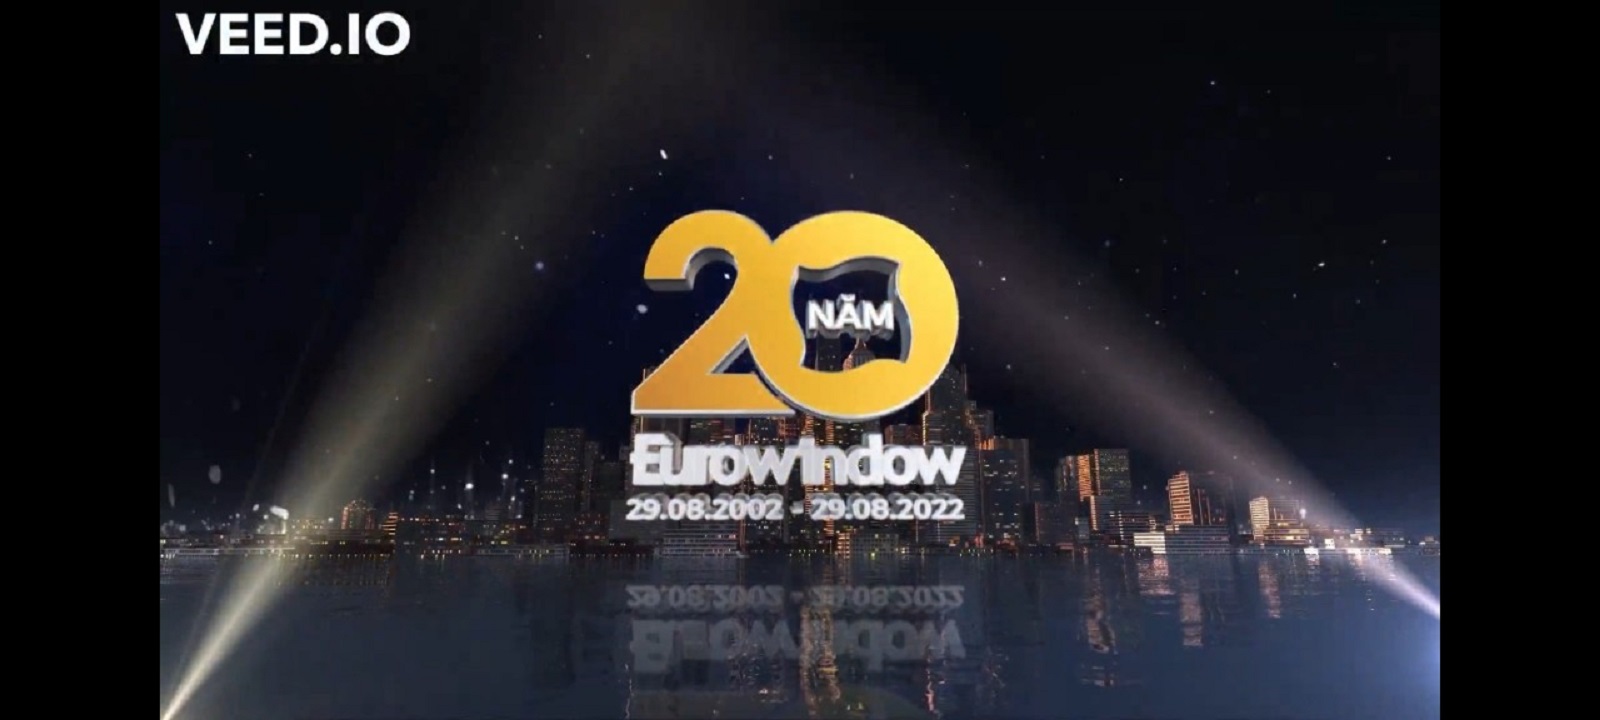 Hành Trình 20 Năm Eurowindow